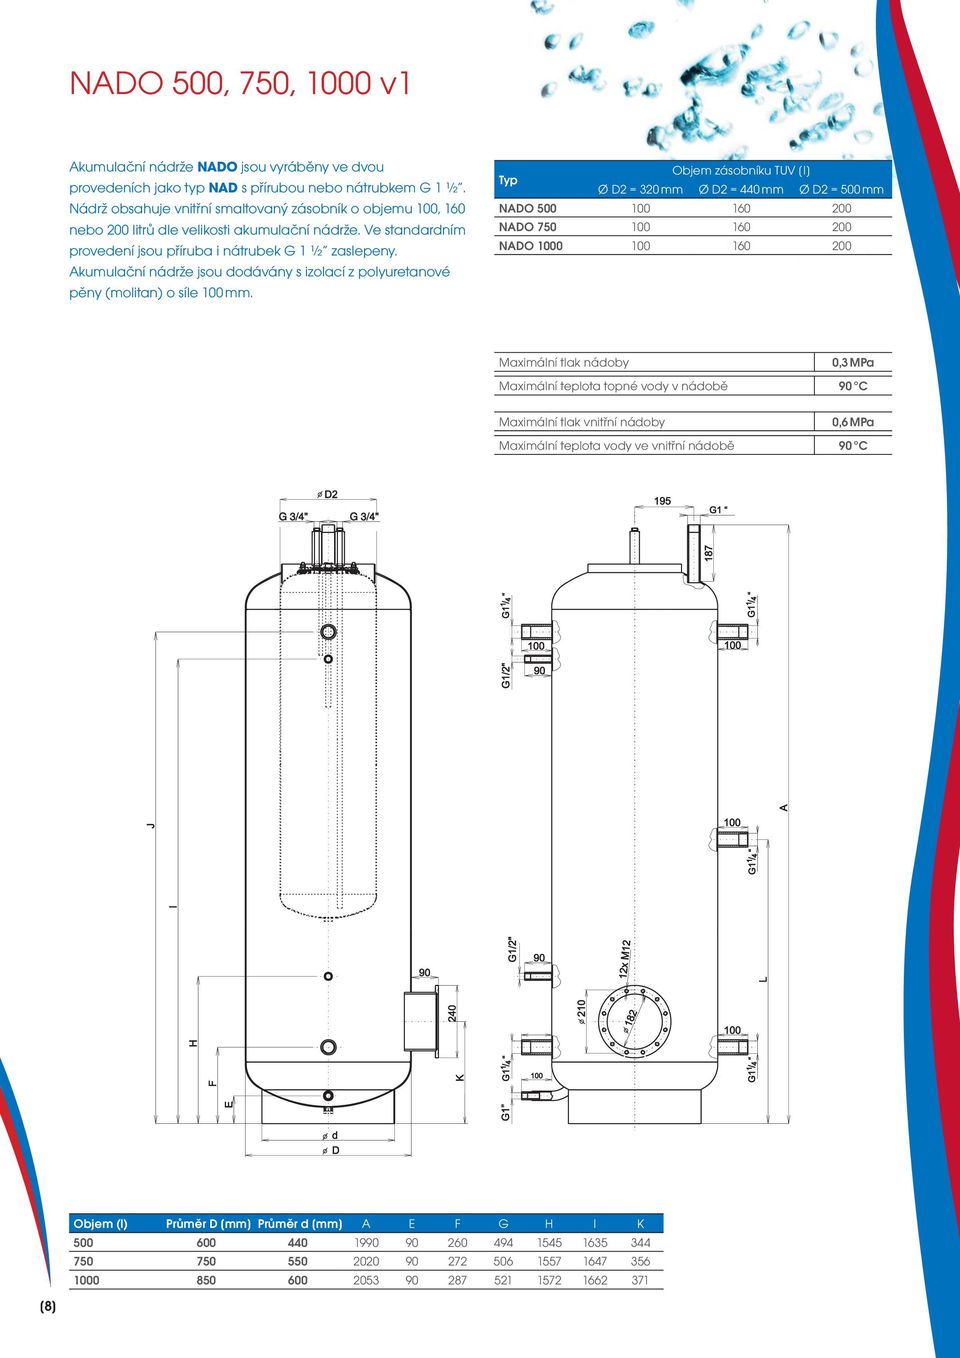 Akumulační nádrže jsou dodávány s izolací z polyuretanové pěny (molitan) o síle mm.